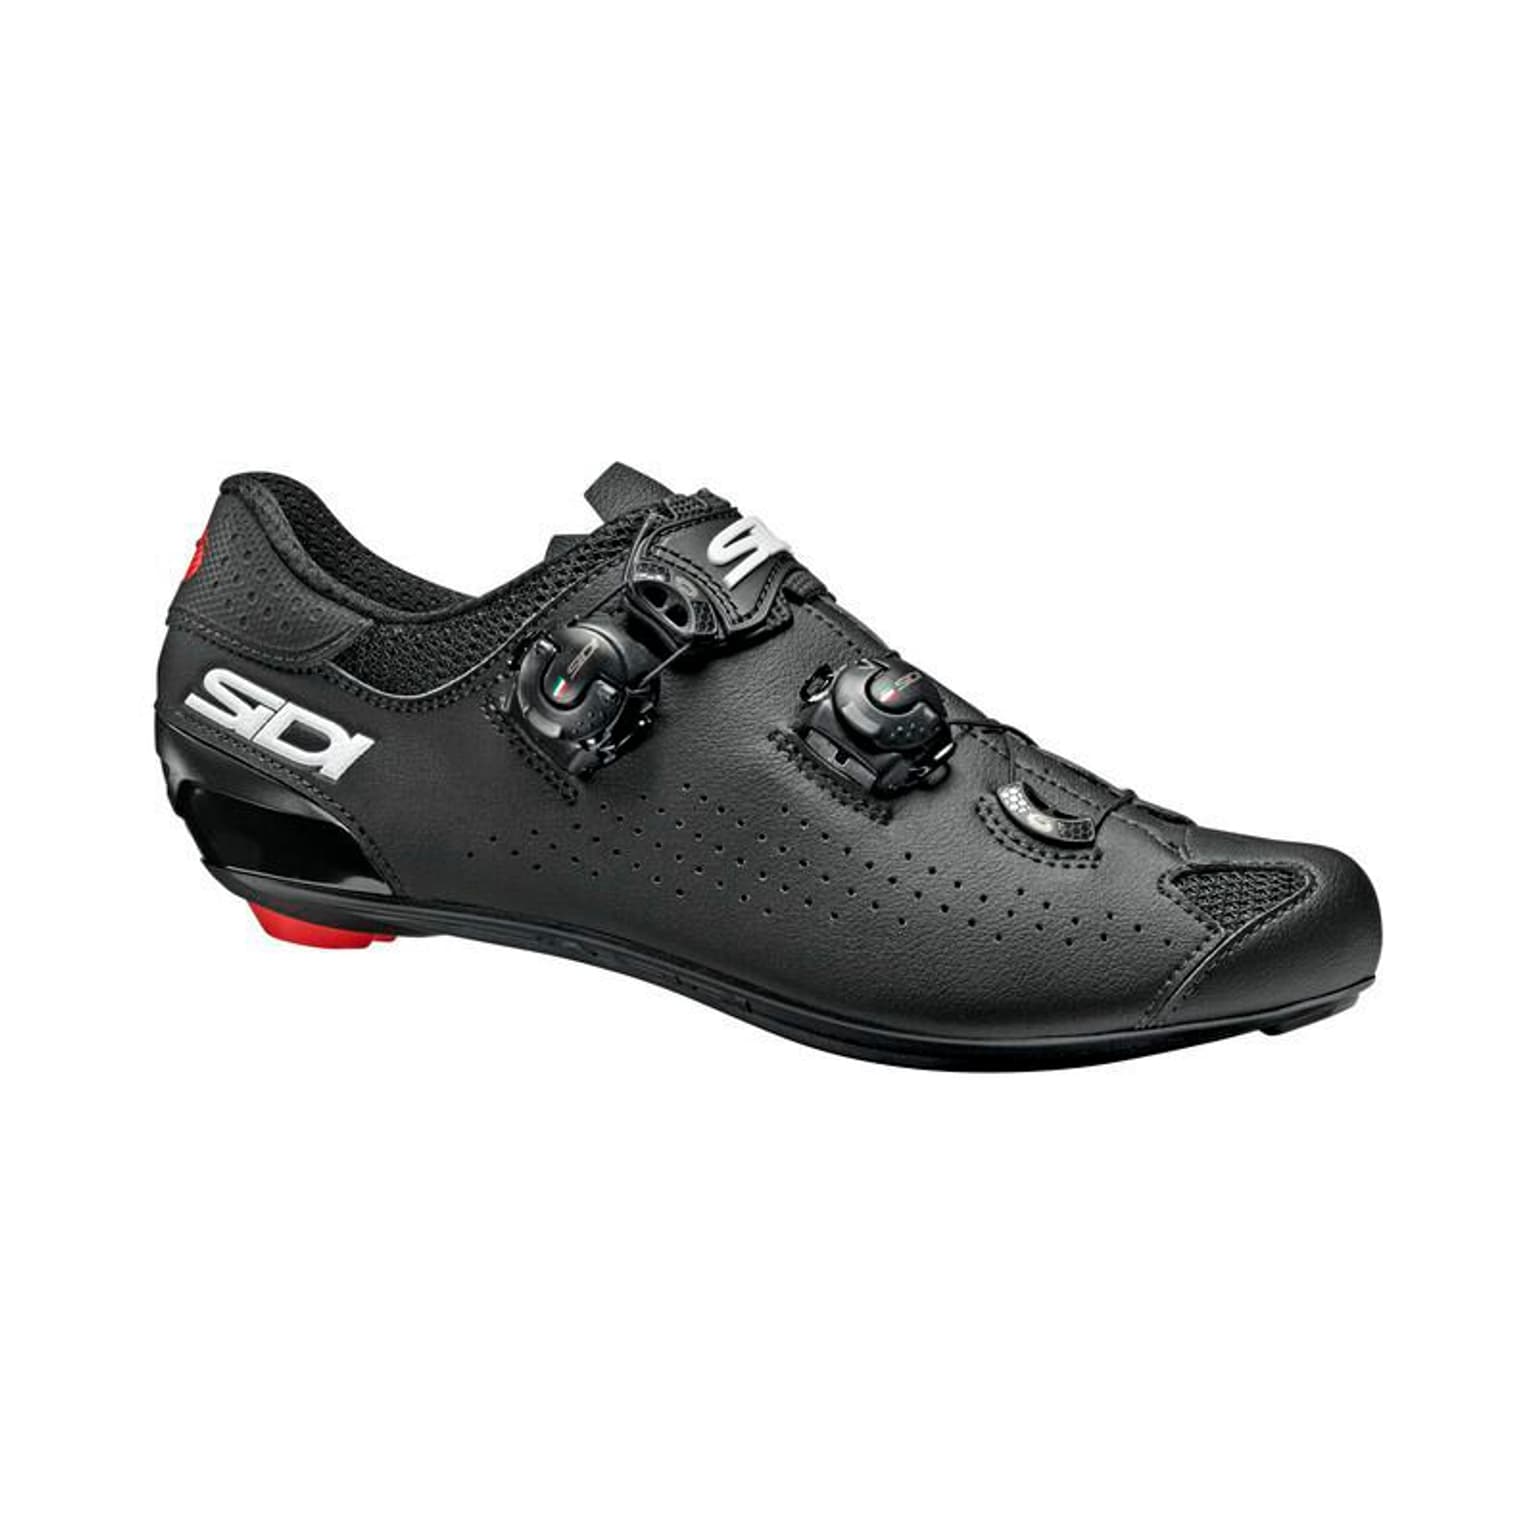 SIDI SIDI RR Genius 10 Carbon Composite Chaussures de cyclisme noir 1